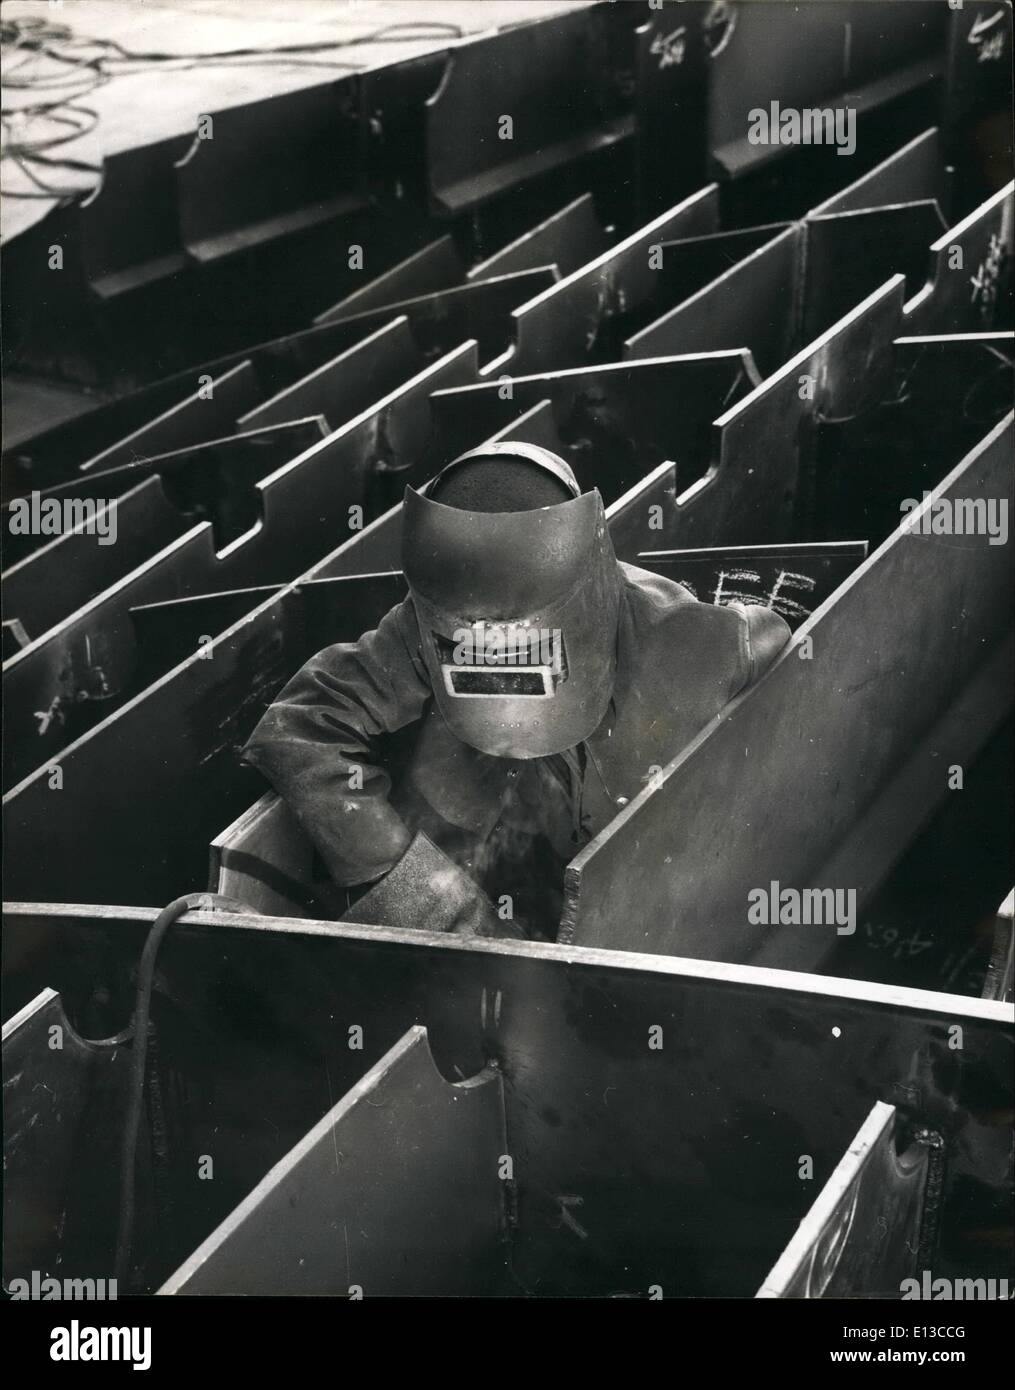 29. Februar 2012 - neue riesige '' Sunarider'' nimmt Gestalt an:. Die Geburt eines neuen Liner ist eine komplexe und lange Prozess, an denen Tausende von Arbeitern, die jeweils auf einen Facharzt-Job beschäftigt übertönen. John Brown Werften in Glasgow sind bekannt für viele bekannte Liner gebaut haben und aus deren Helling-jetzt von den neuen Cunarder besetzt, die berühmten Königin eingeleitet worden. Der neue Liner wurde seit 1955 im Bau und wird November 1968 bis 1983 abgeschlossen sein. Bisher 6000 Tonnen Stahl wurden installiert und vieles mehr müssen vor dem Datum der Fertigstellung Stockfoto